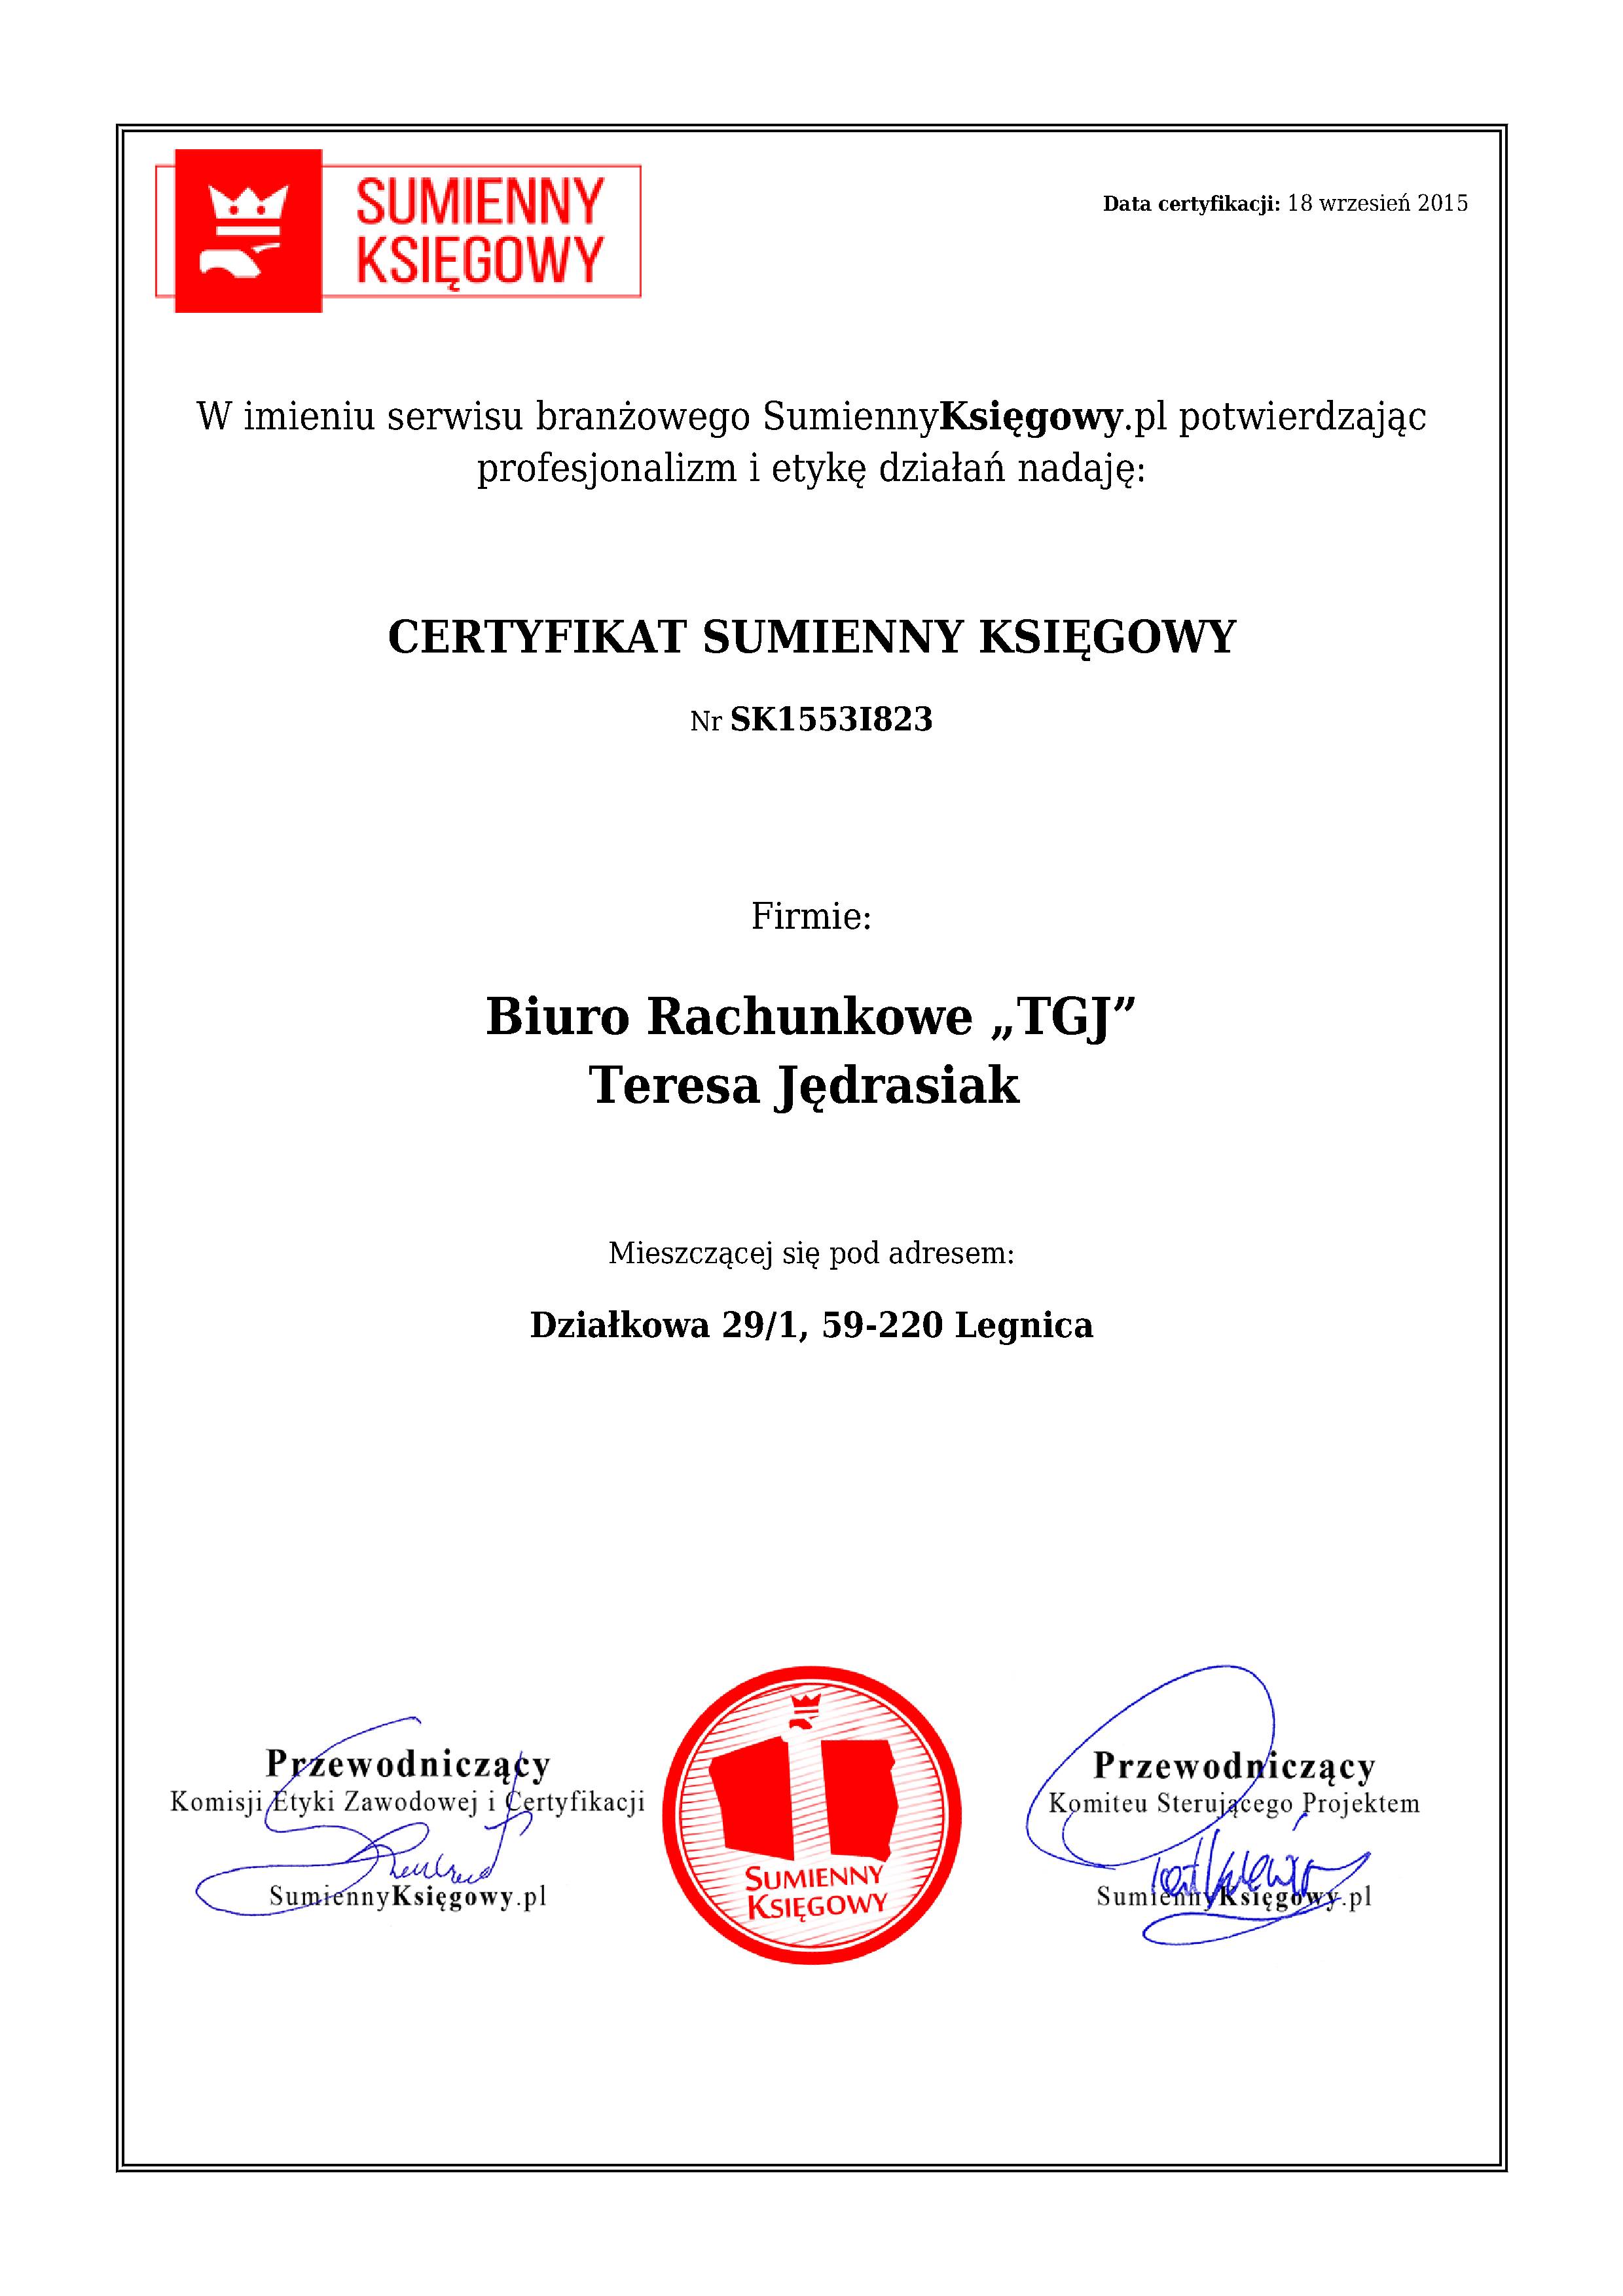 Biuro Rachunkowe „TGJ” Teresa Jędrasiak  certyfikat 1